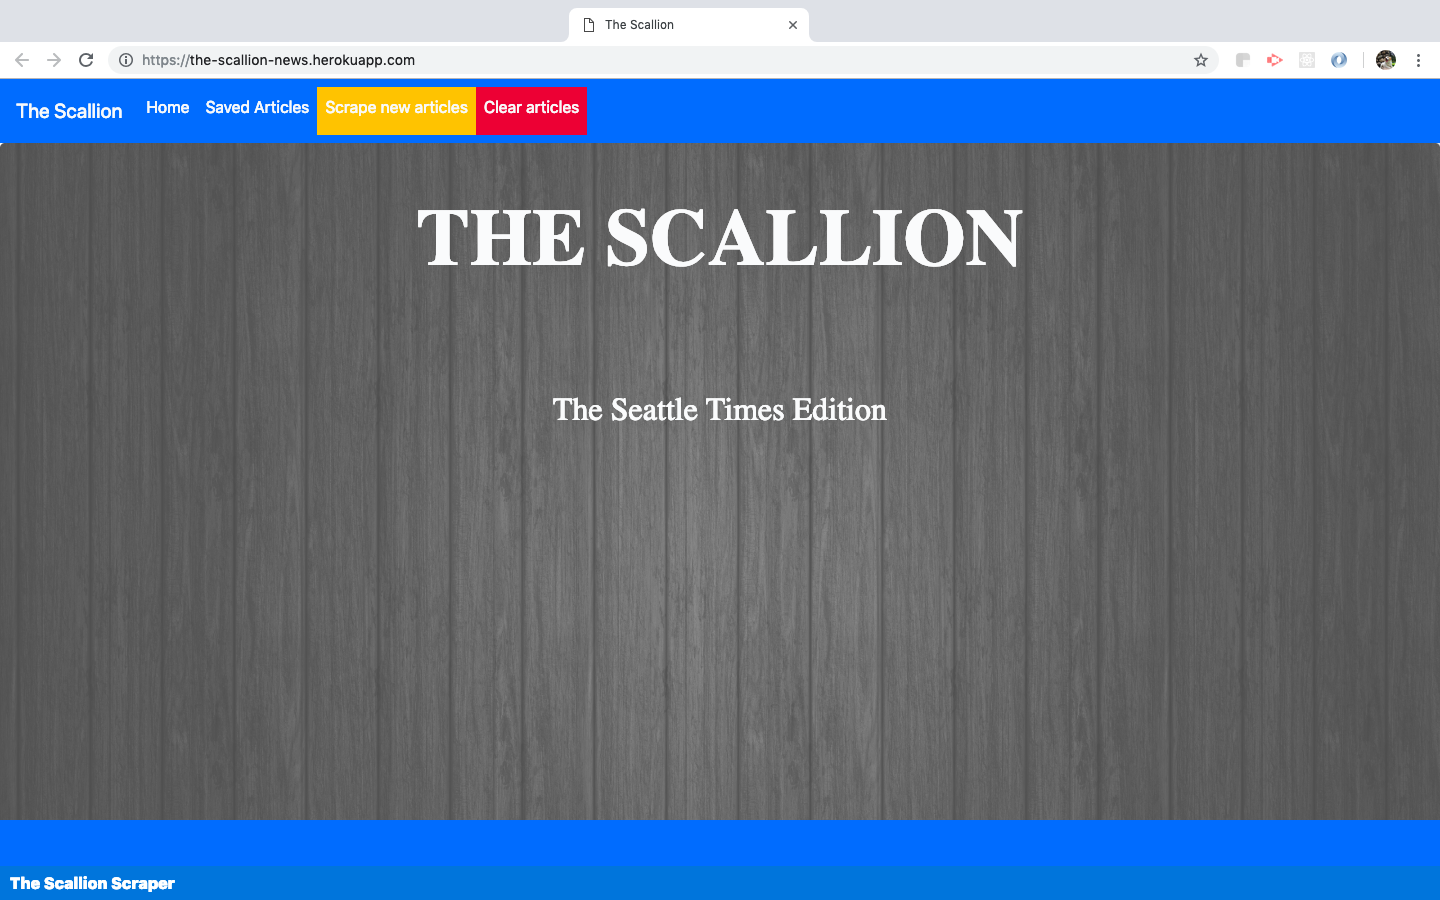 Scallion- the news scraper